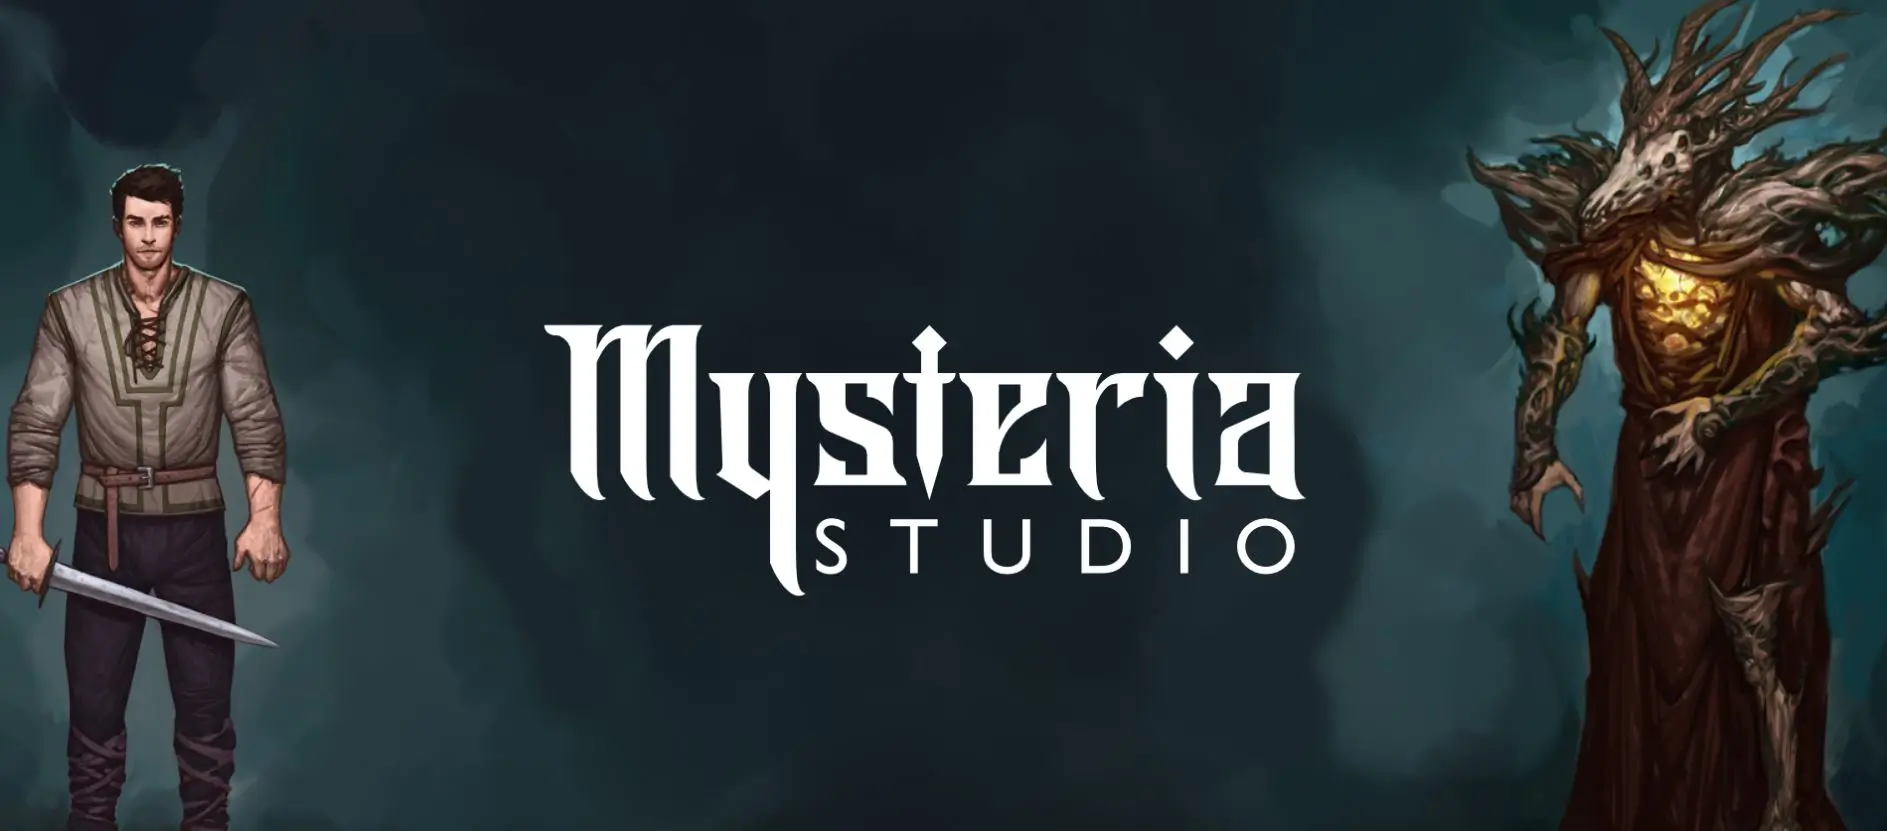 © Mysteria Studio